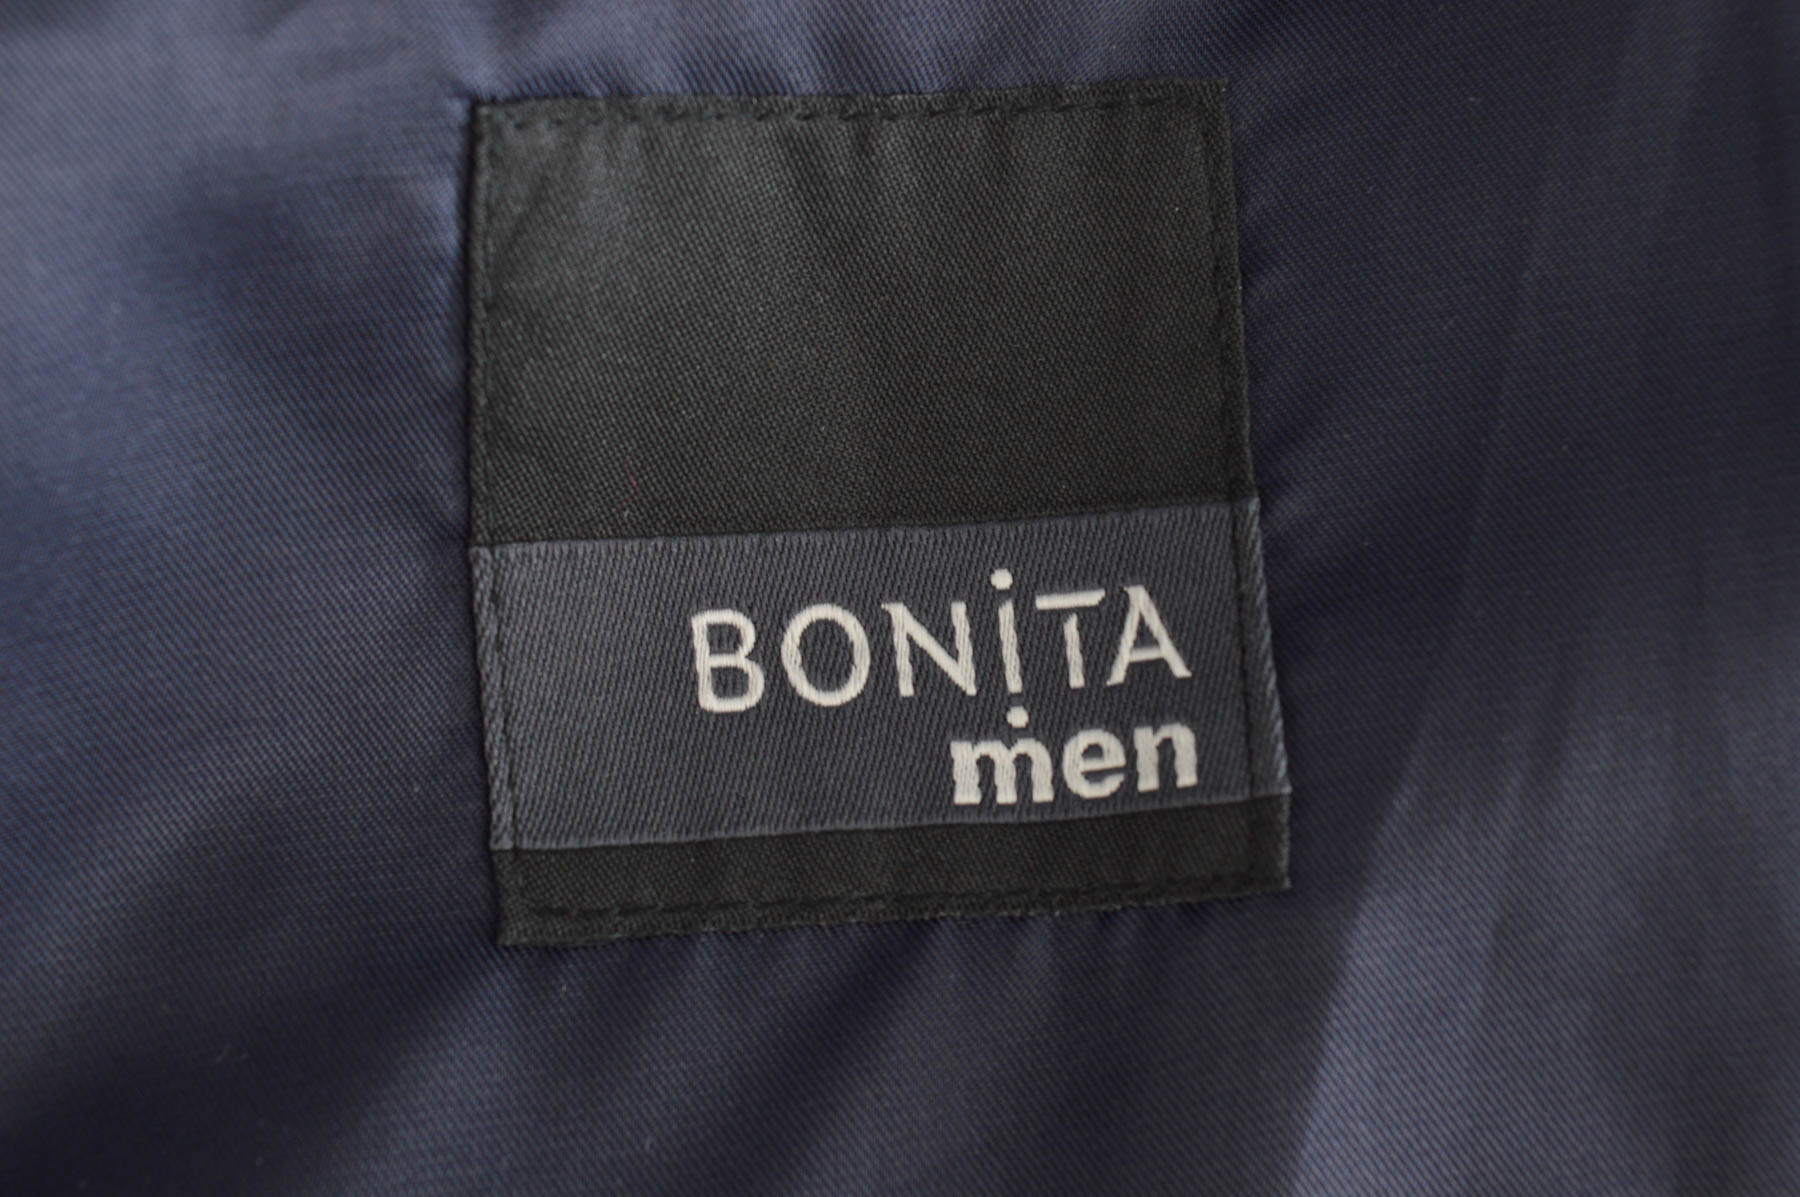 Men's blazer - BONiTA men - 2